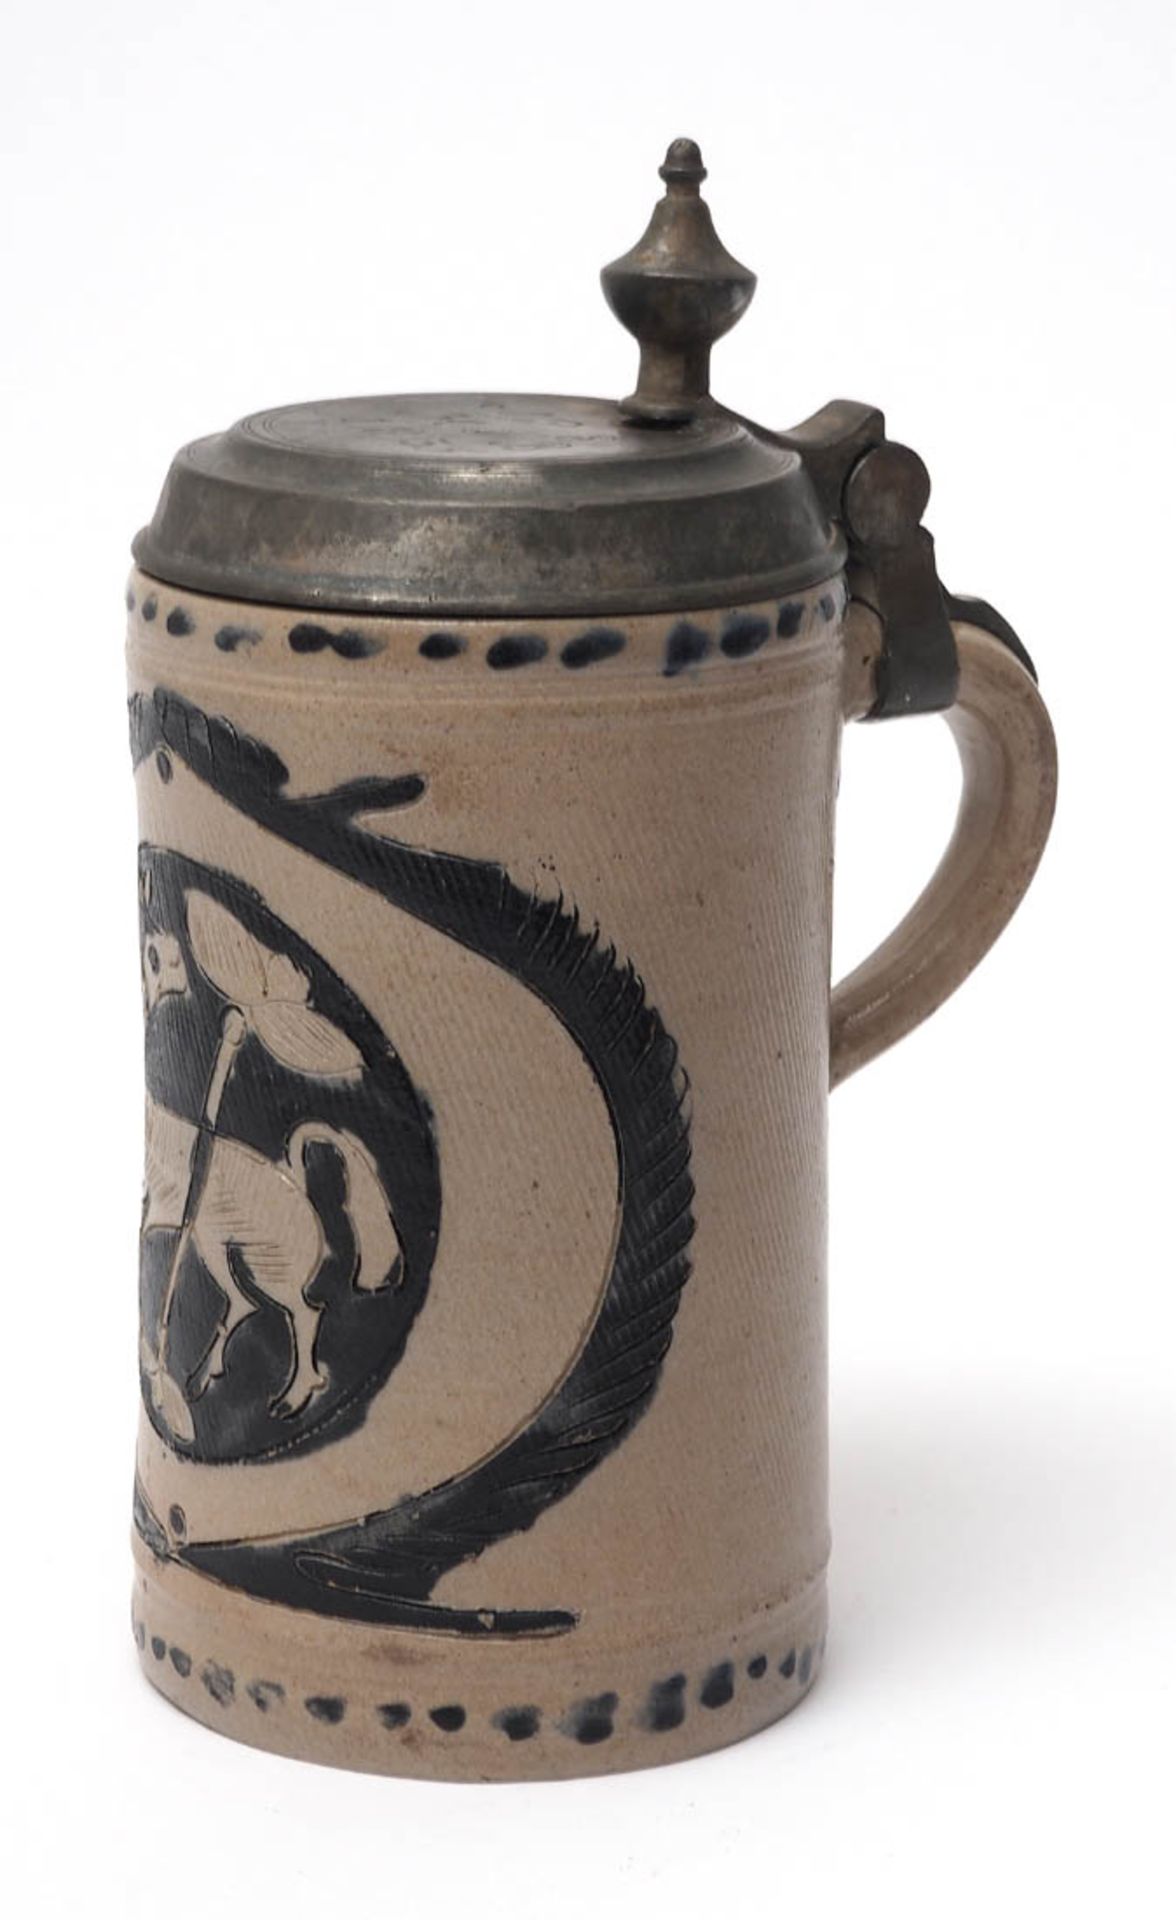 Keramikkrug, wohl Westerwald, dat. 1835 Zylindrischer Korpus. Auf der Schauseite Ovalmedaillon mit